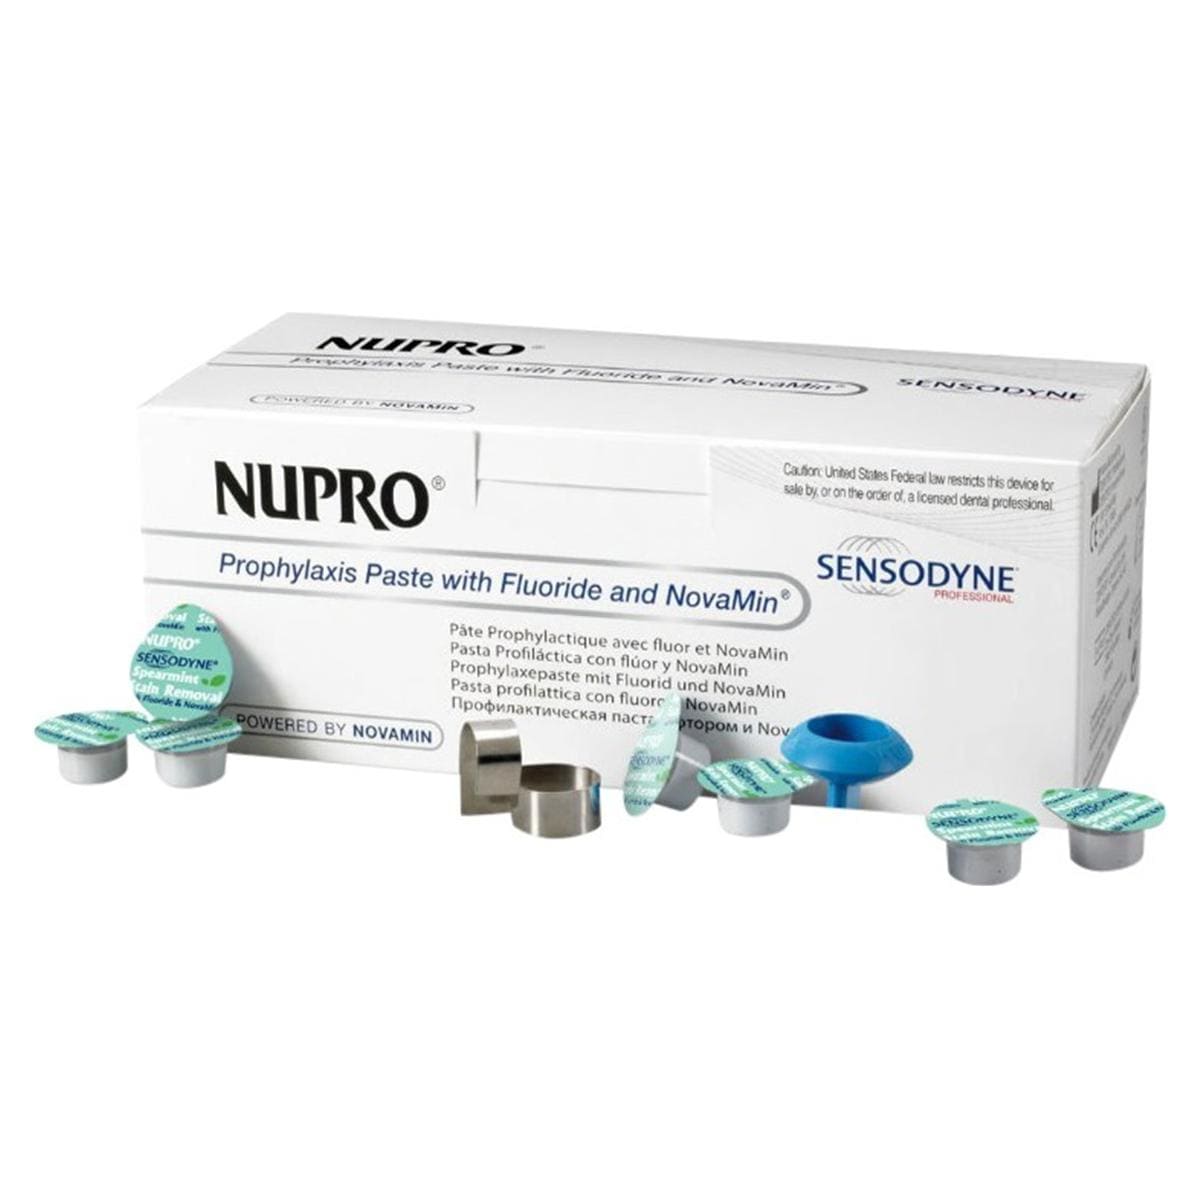 Nupro Sensodyne Prophylaxis paste single dose met fluoride - Mint, polishing